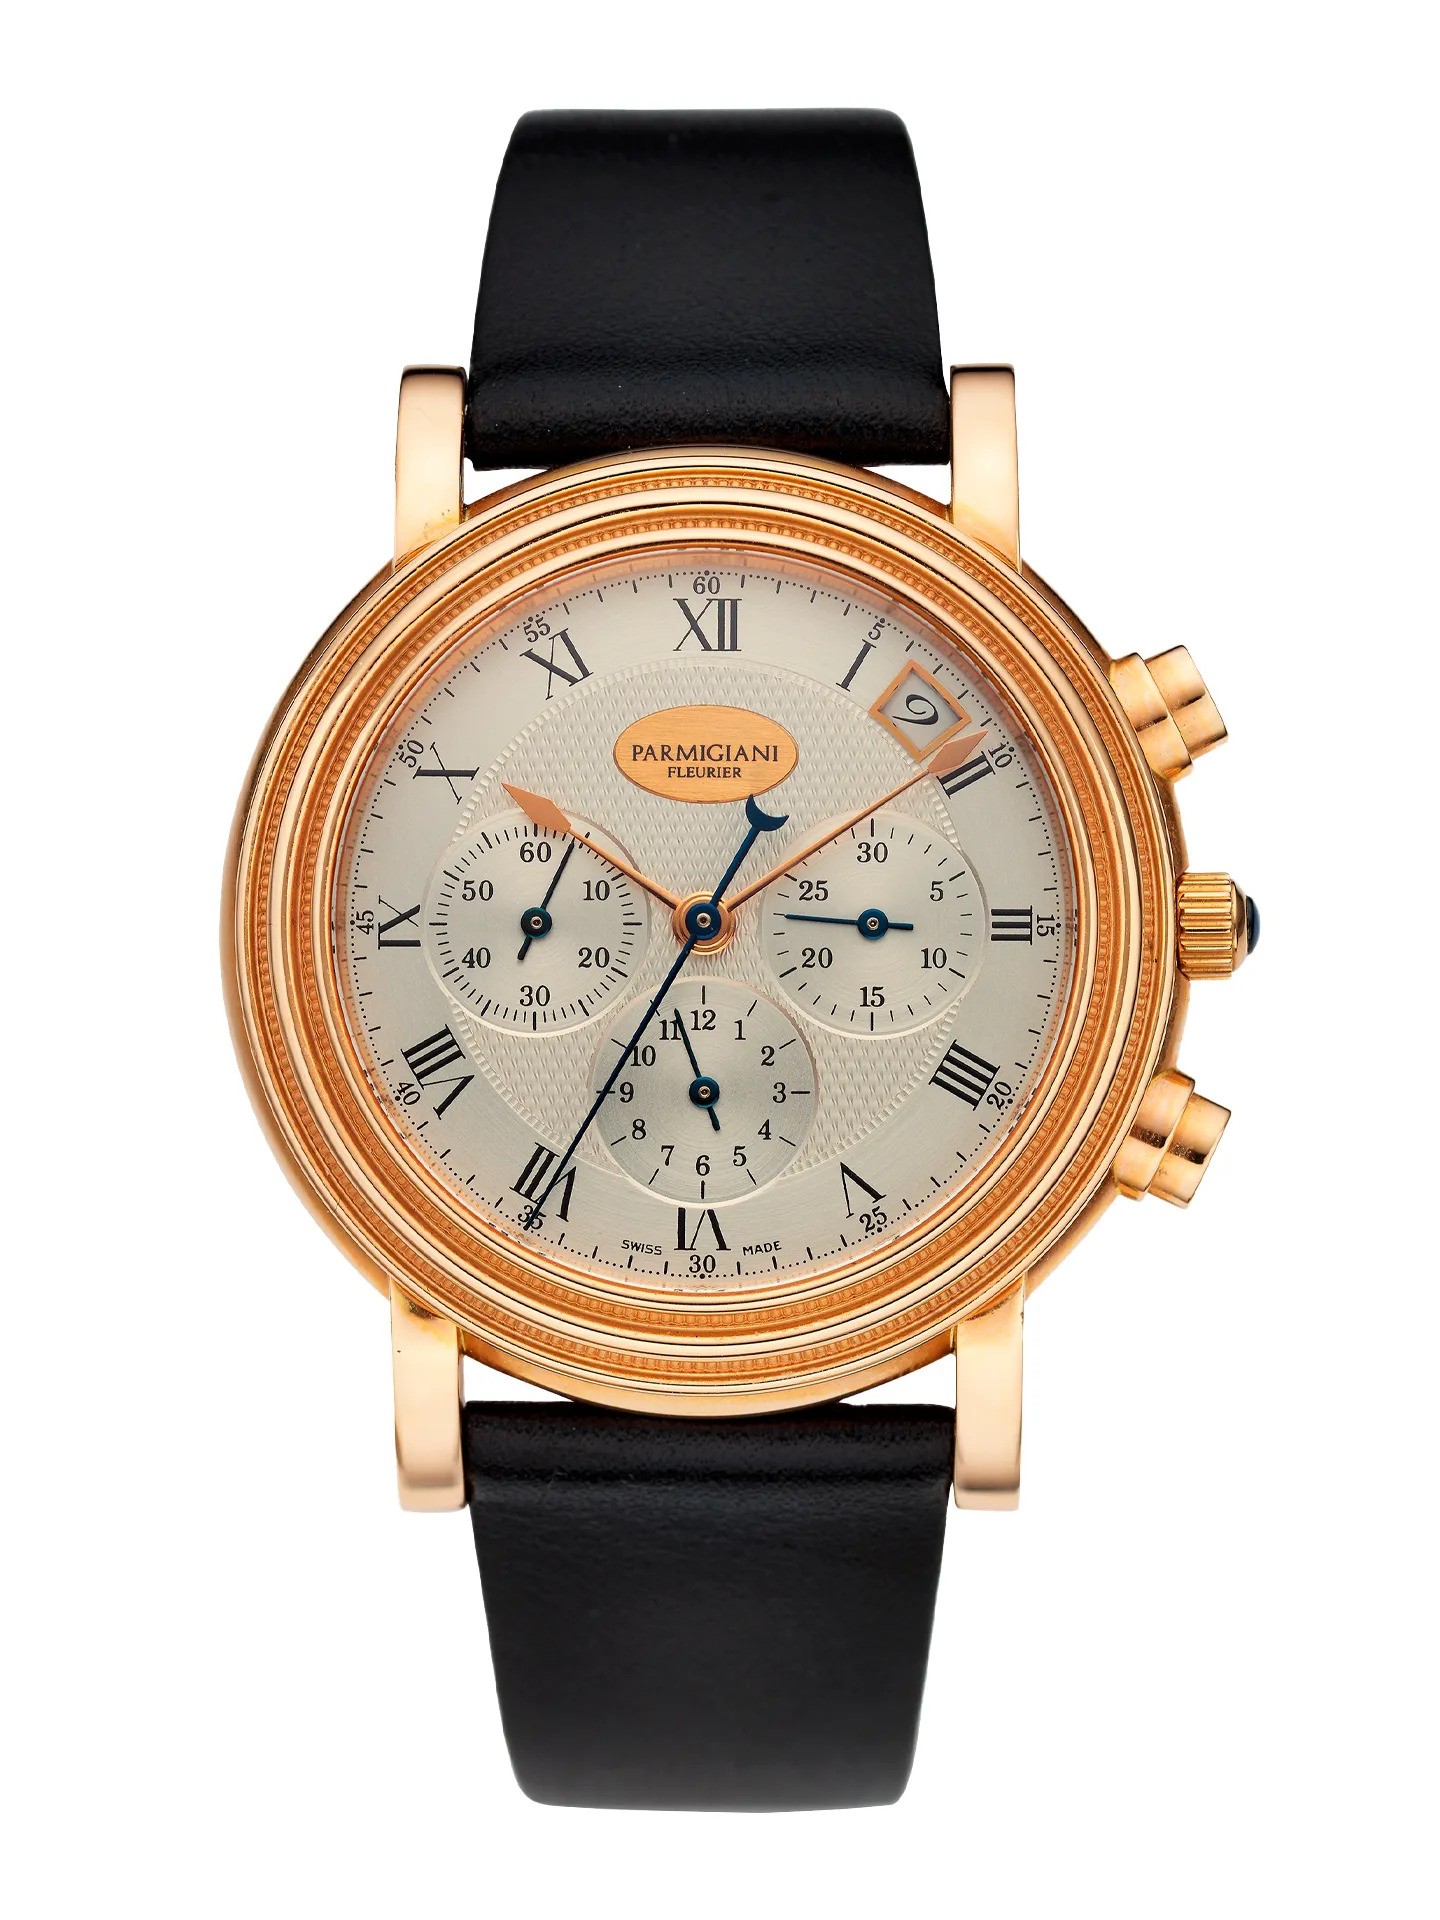 Die Toric-Uhr war die erste des legendären Uhrendesigners Michel Parmigiani aus dem Jahr 1996 und kann 26.000 Pfund kosten